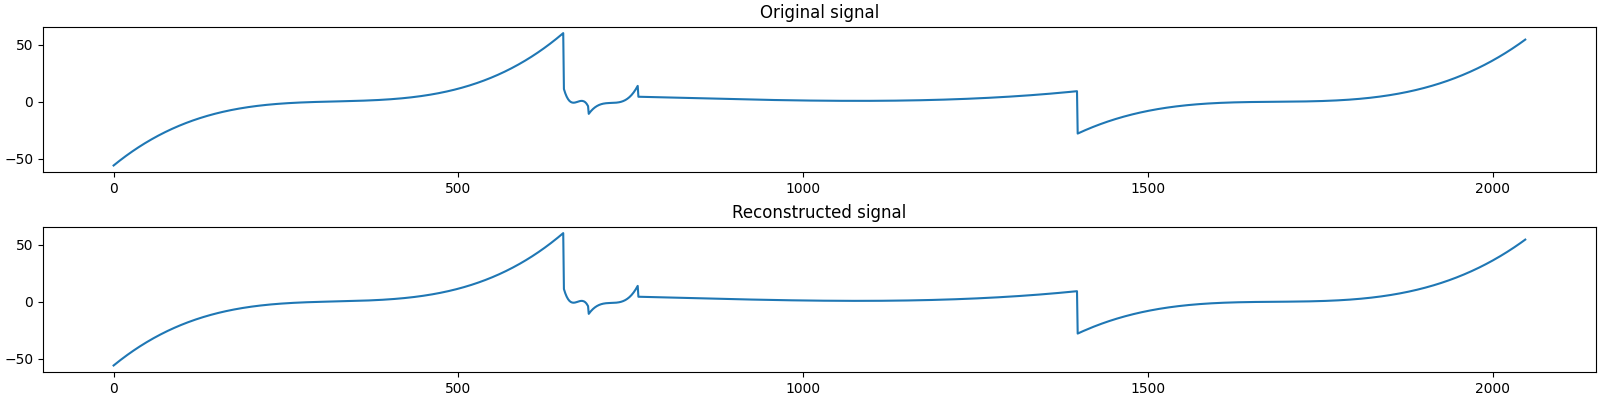 Original signal, Reconstructed signal